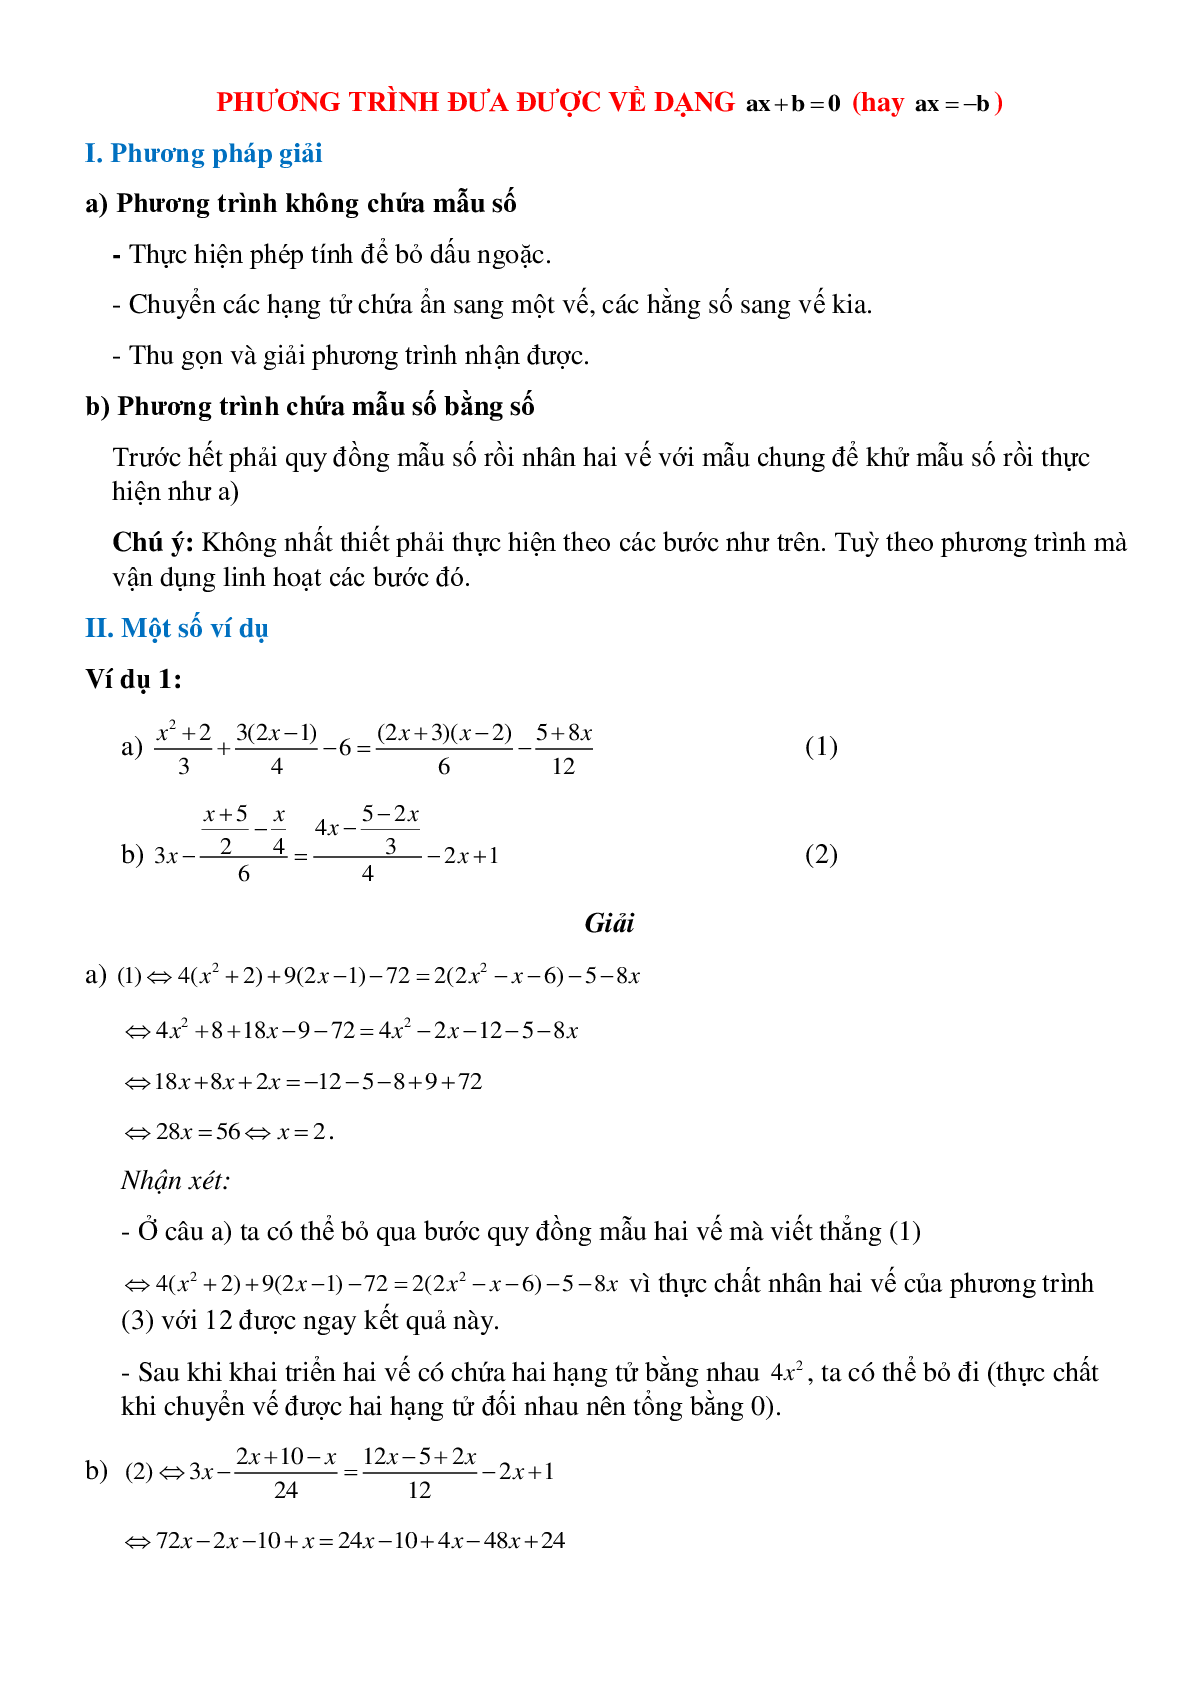 Phương trình đưa được về dạng y=ax+b (trang 1)